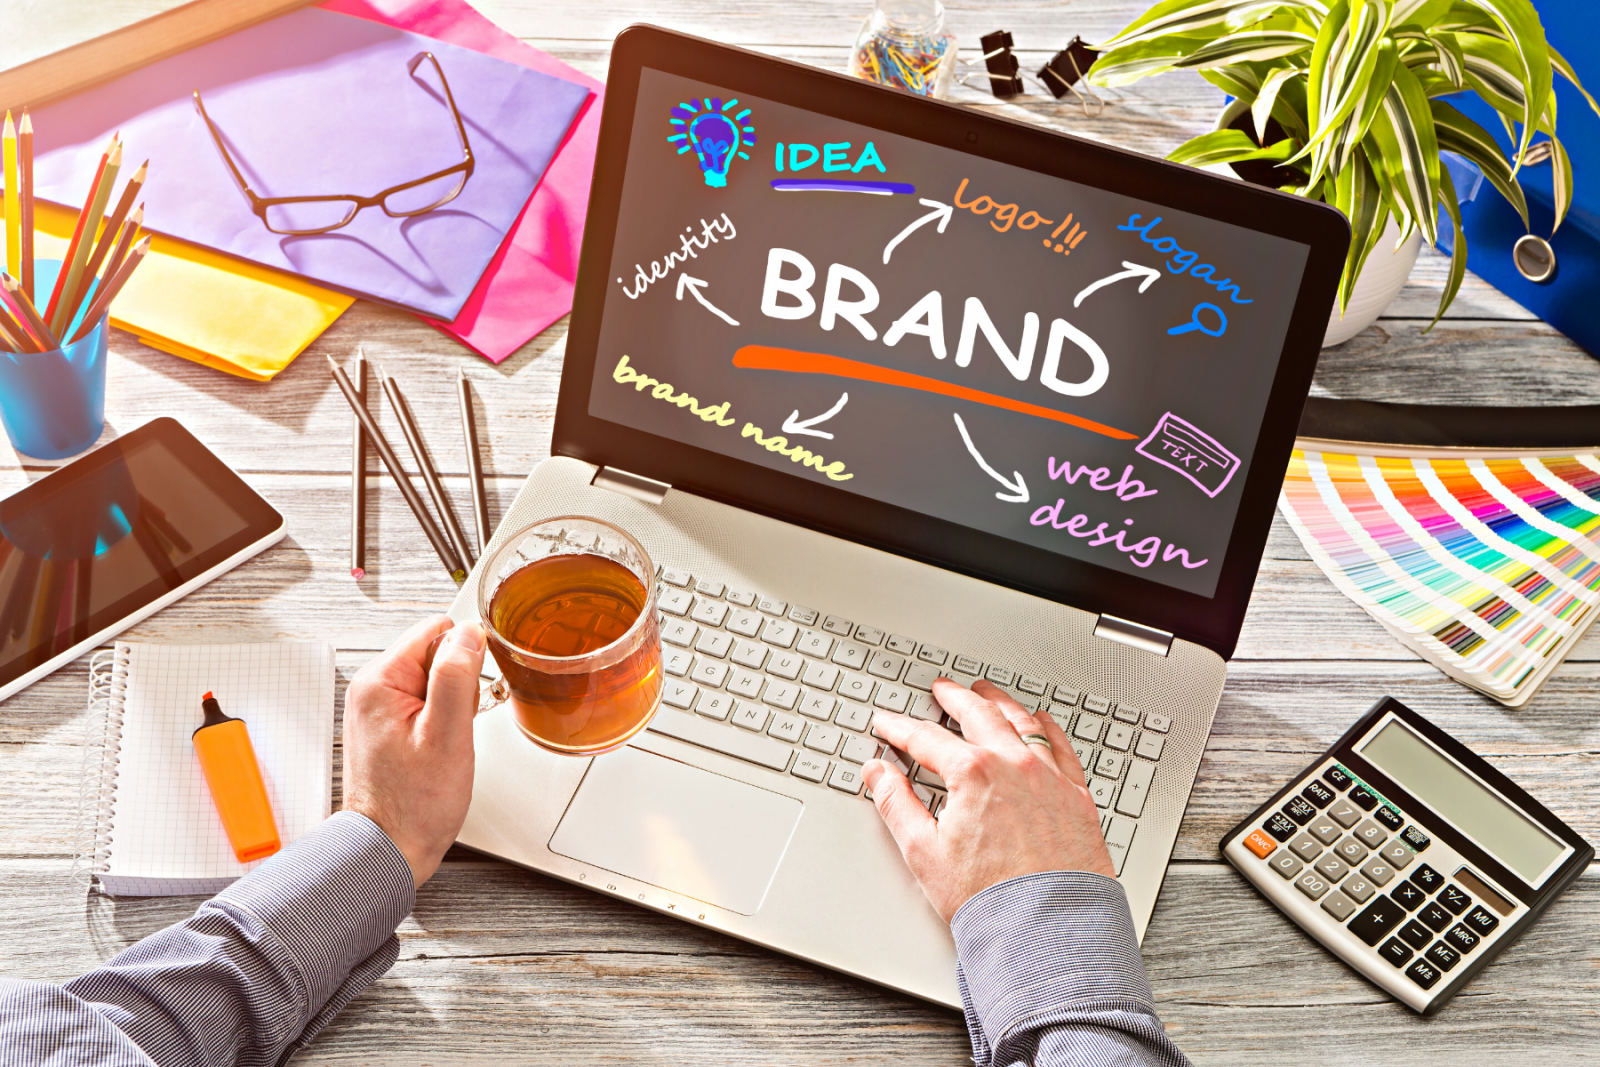 Brand Marketing là gì?